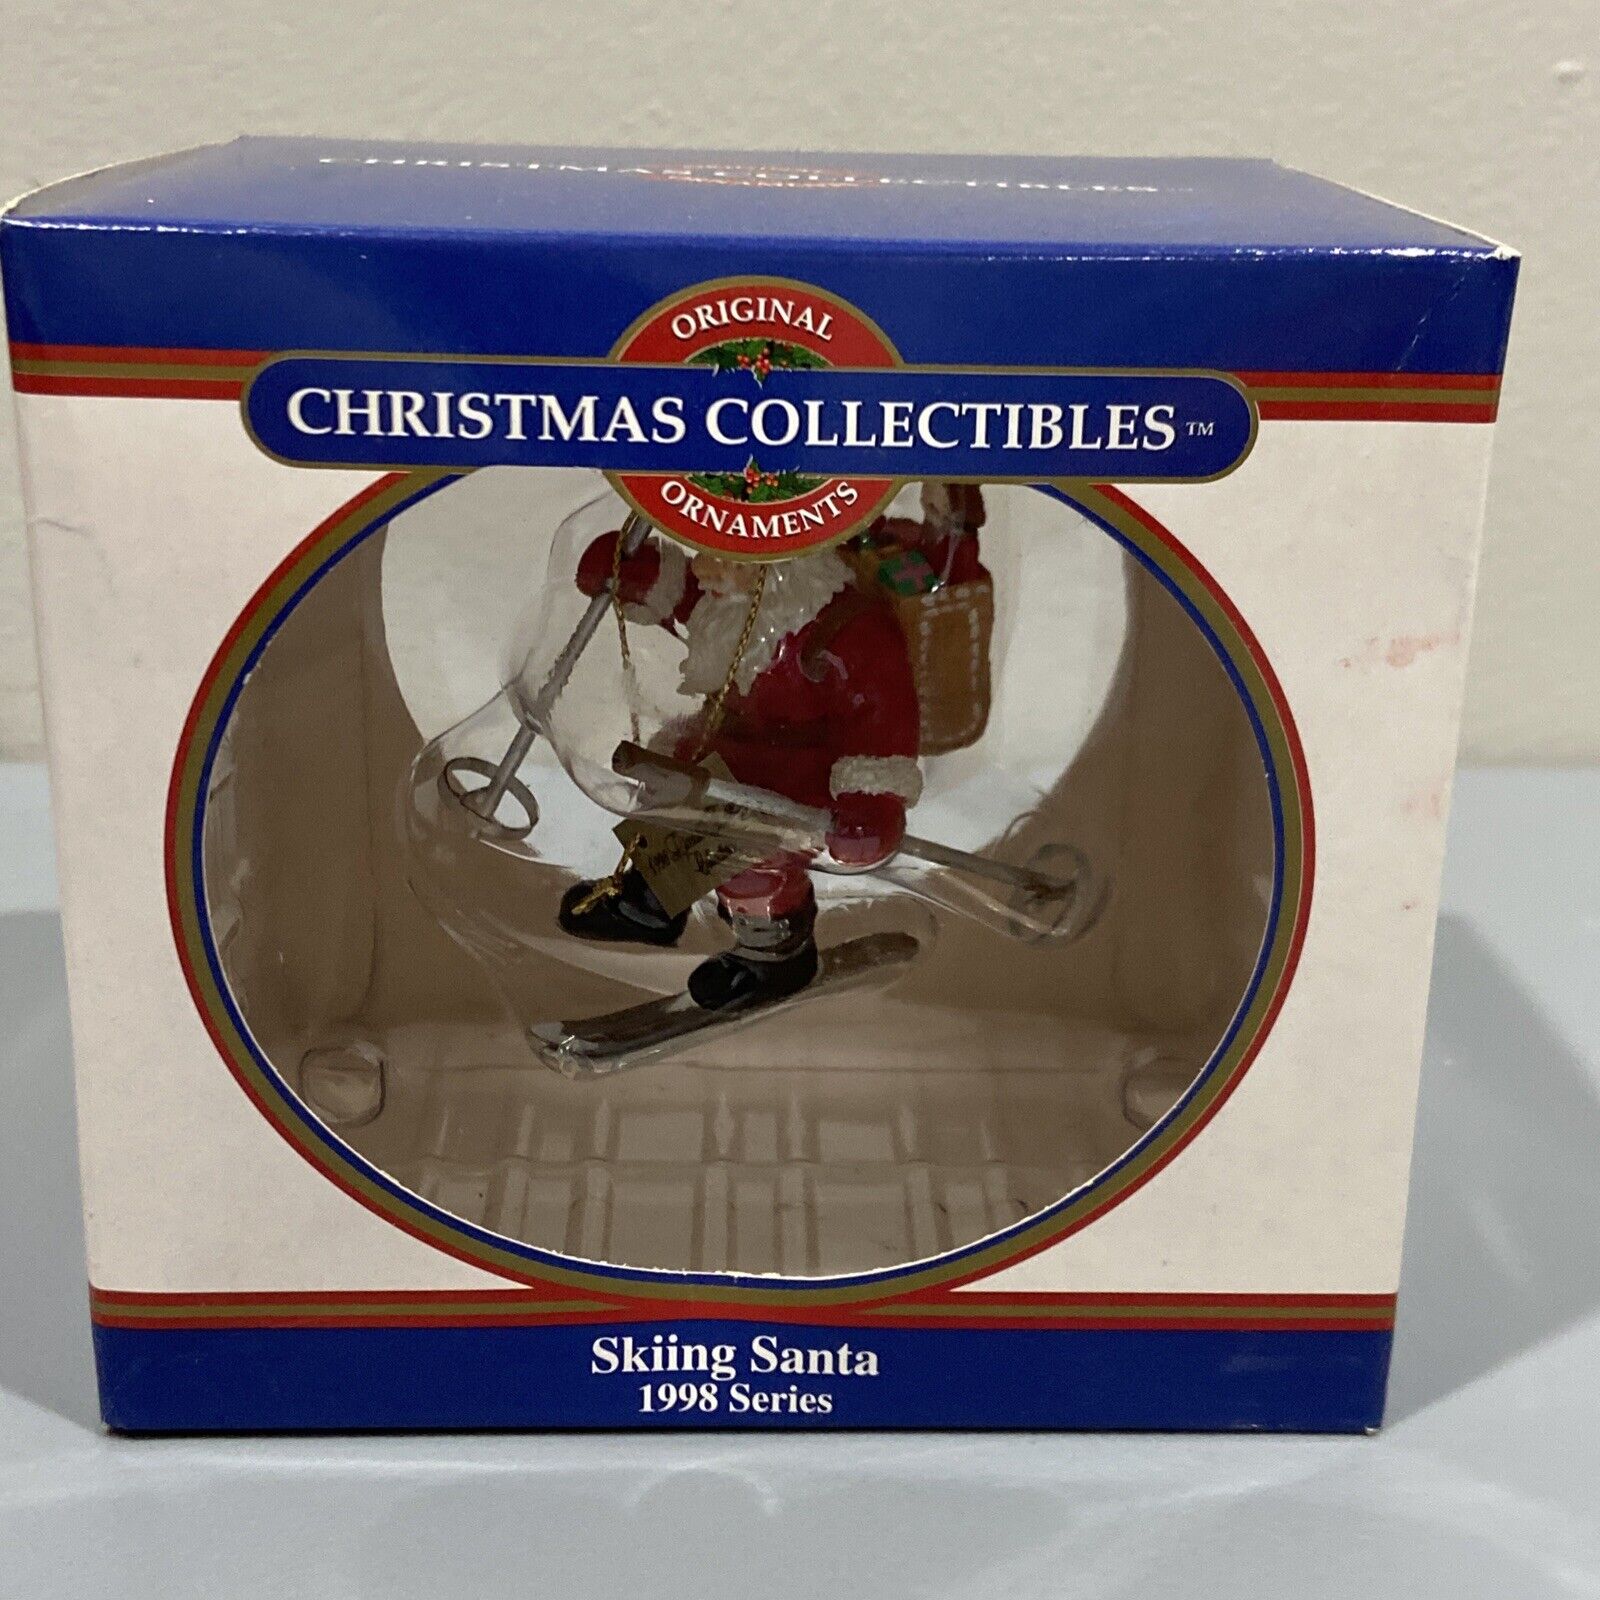 Vtg Original Ornaments Christmas Collectibles 1998 Skiing Santa